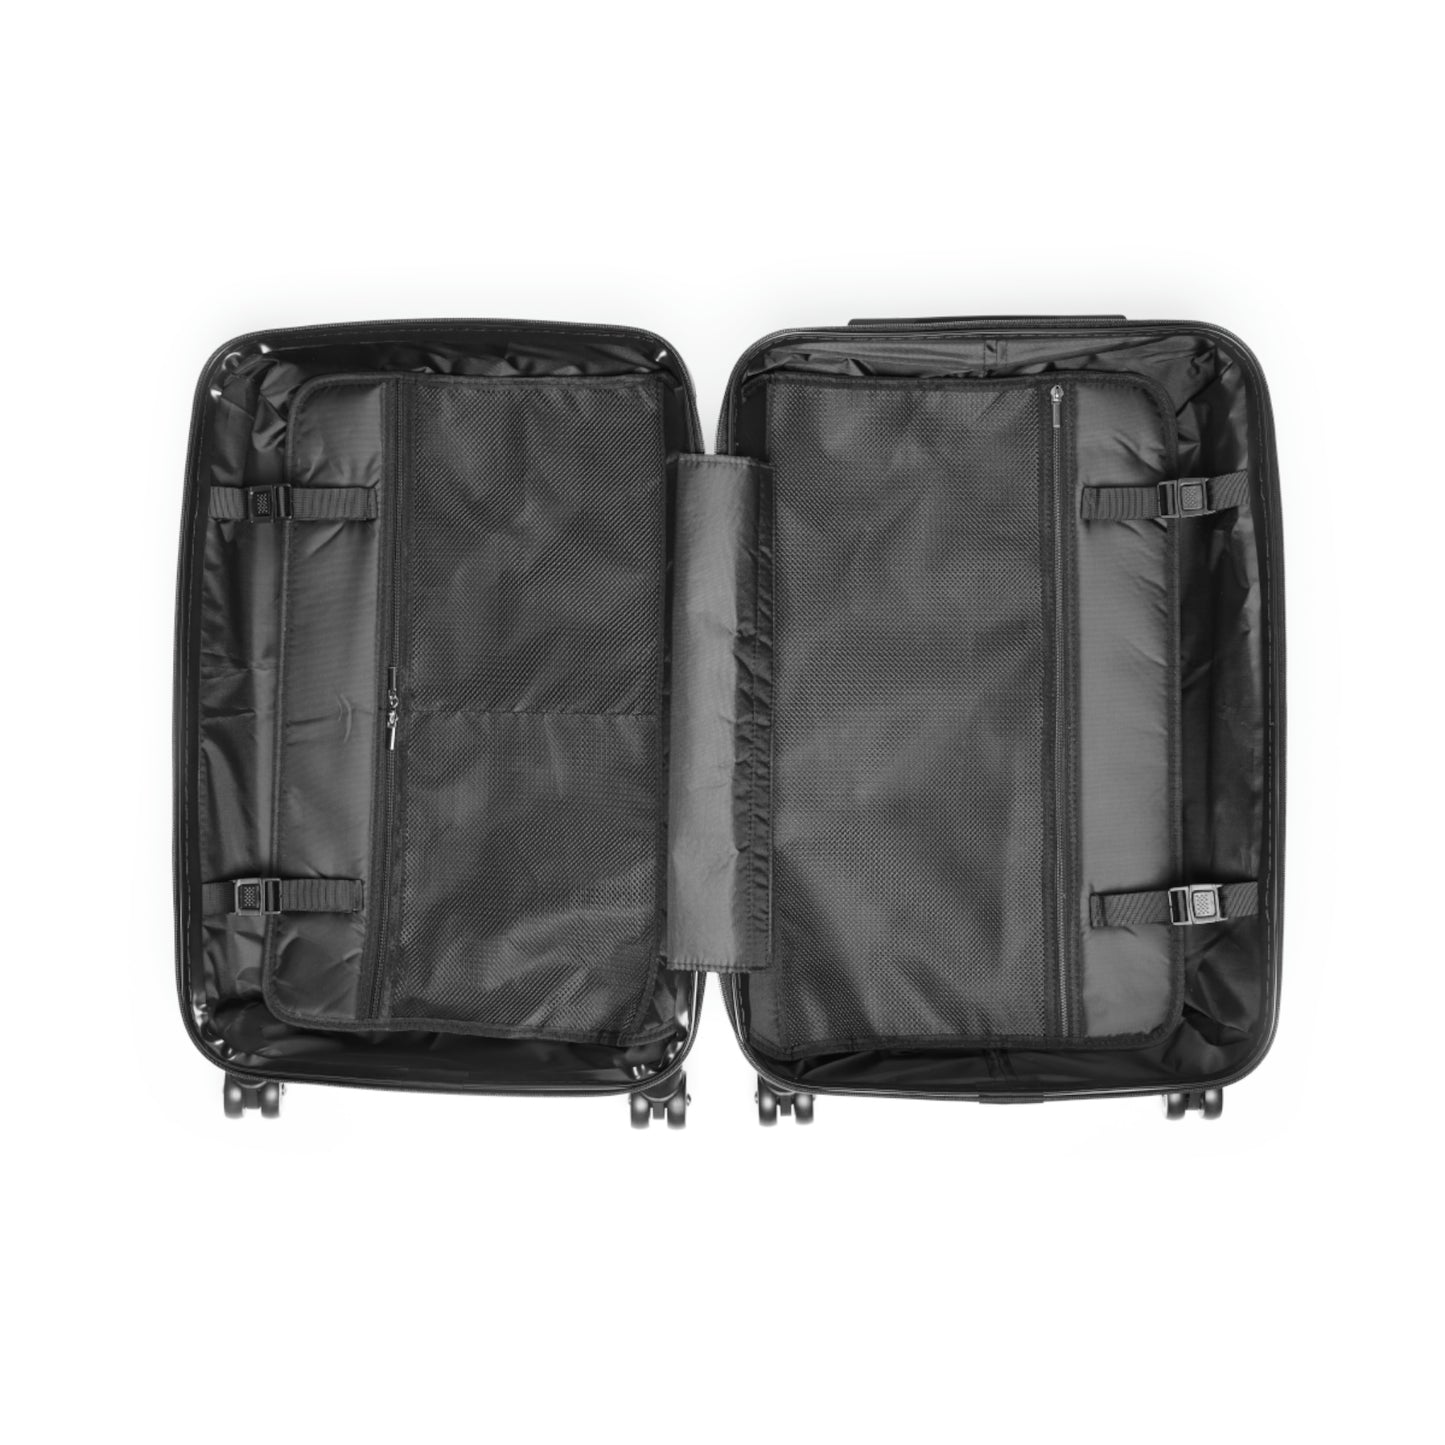 Beyond Petroleum, Travel Unique Suitcase